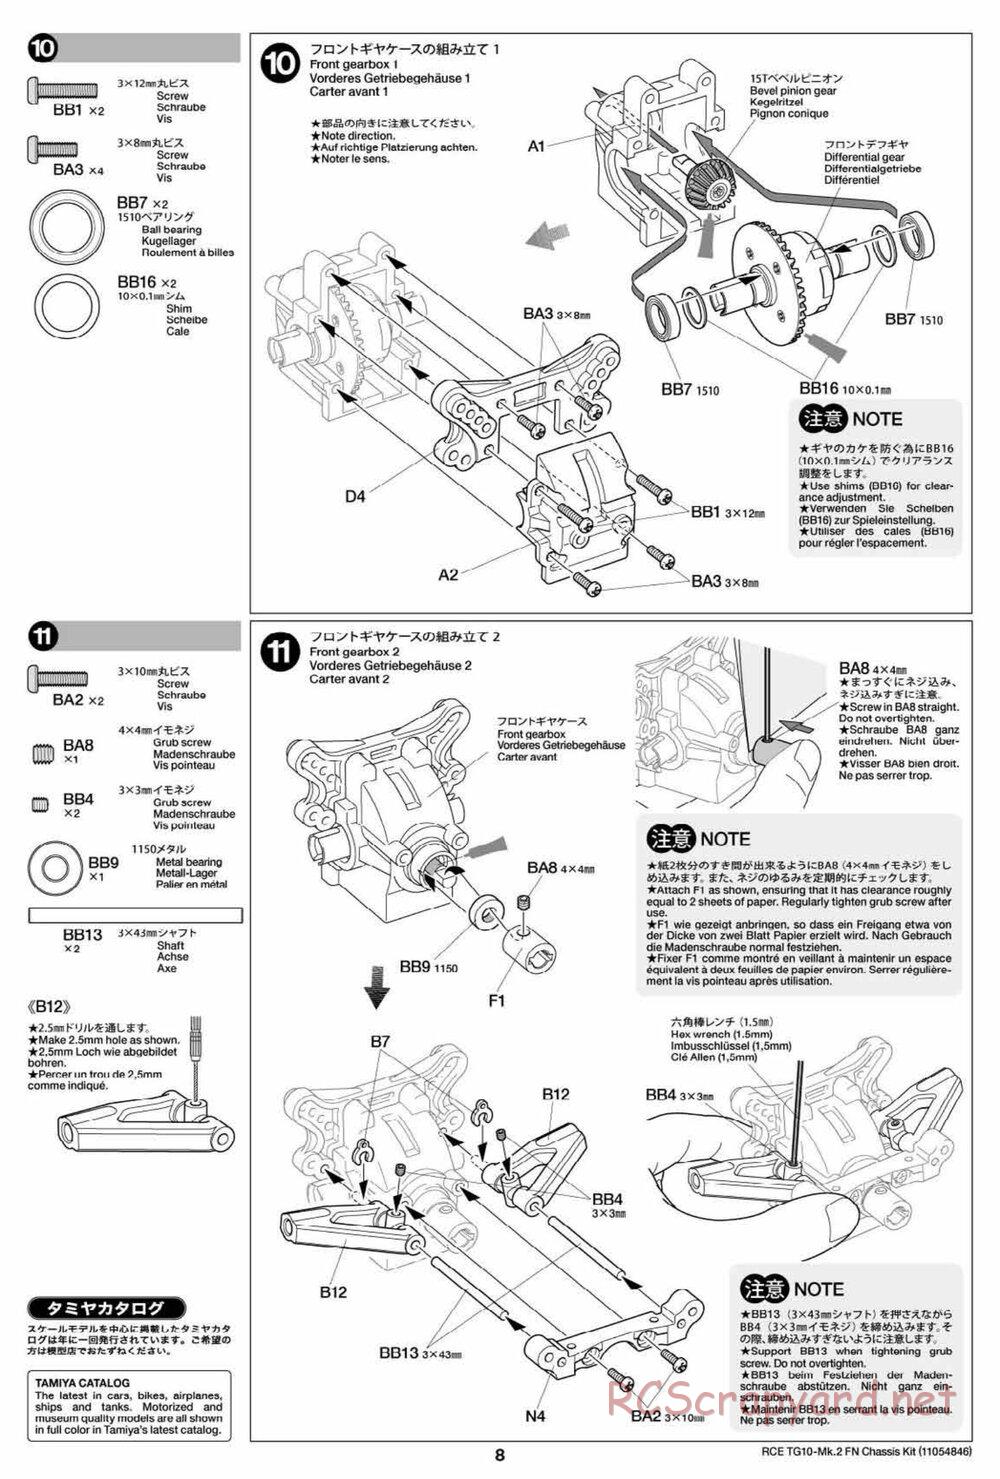 Tamiya - TG10 Mk.2 FN Chassis - Manual - Page 8